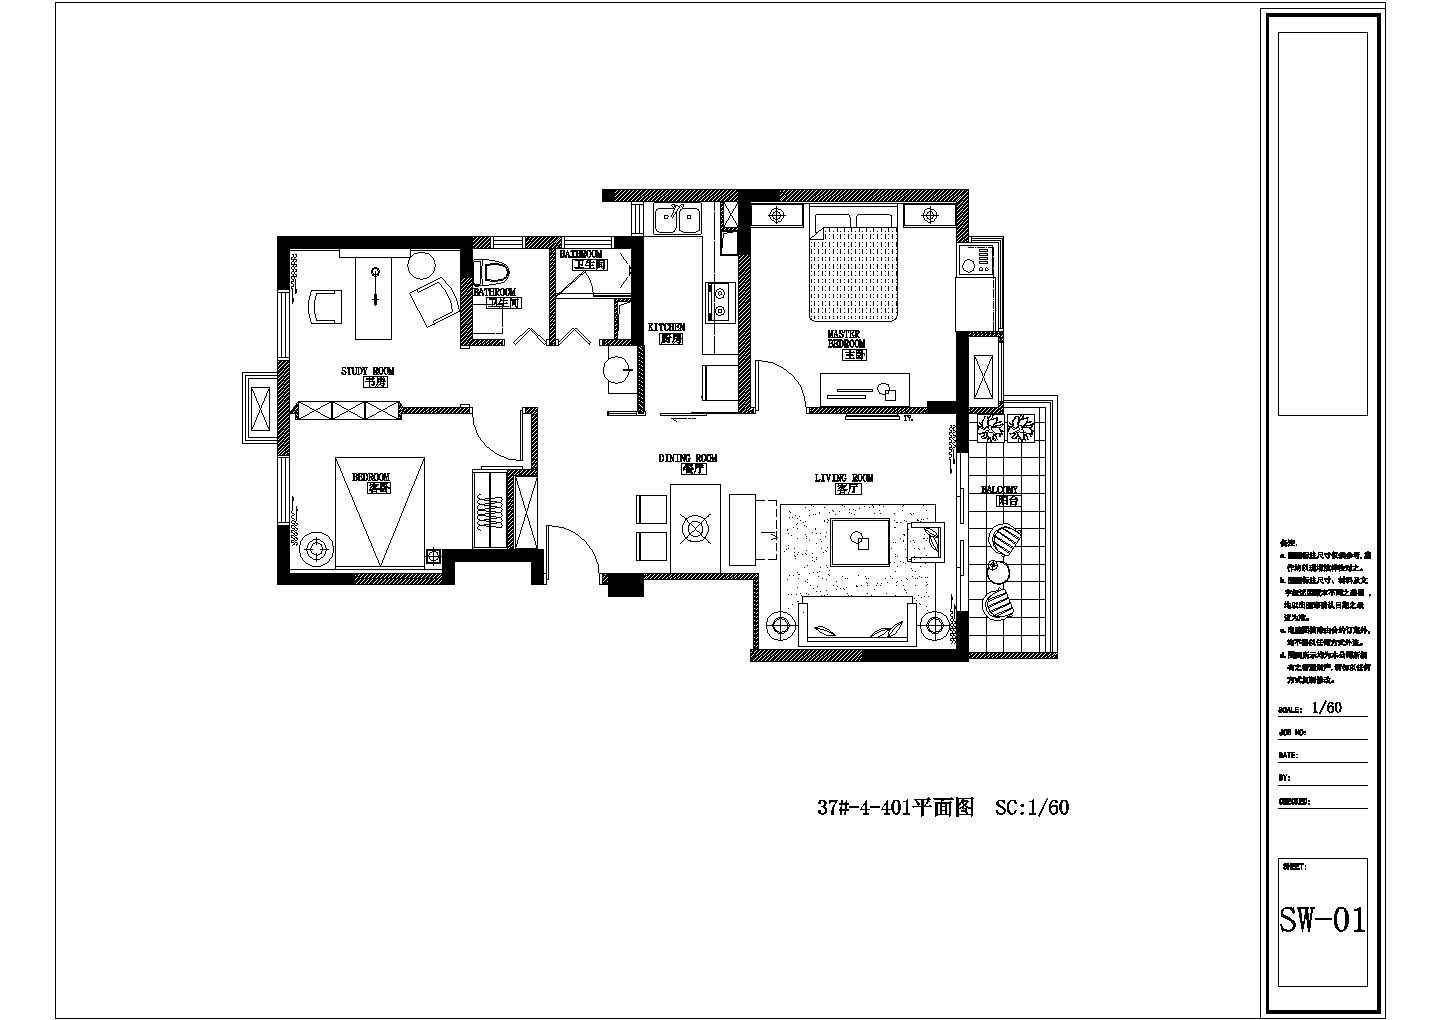 三室一厅住房结构设计方案及施工全套CAD图纸